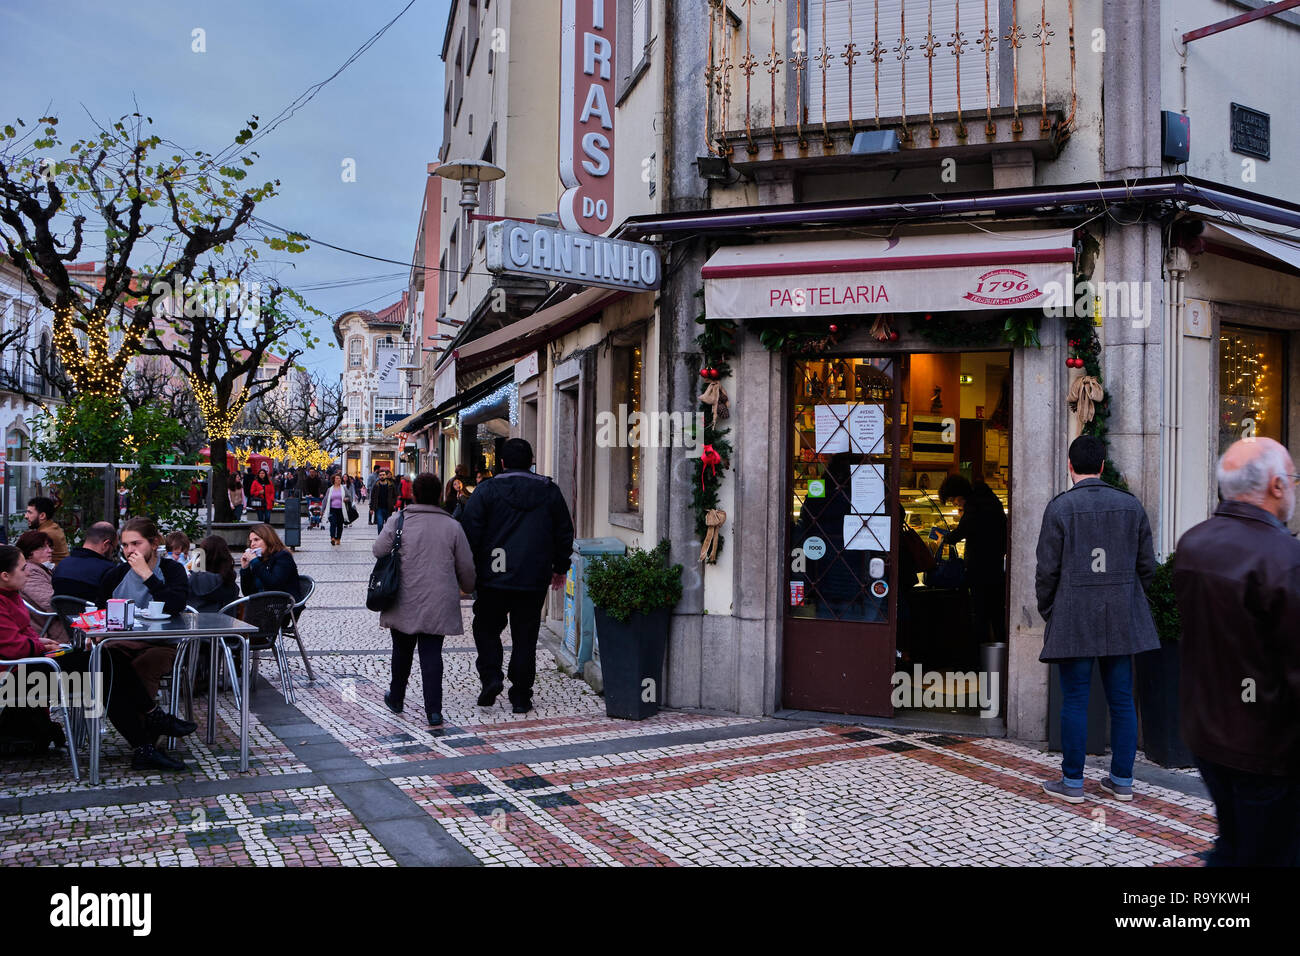 Braga, Portogallo - 23 dicembre 2018: nella stagione di festa per le strade della città di riempire con le persone. Braga, Portogallo. Foto Stock